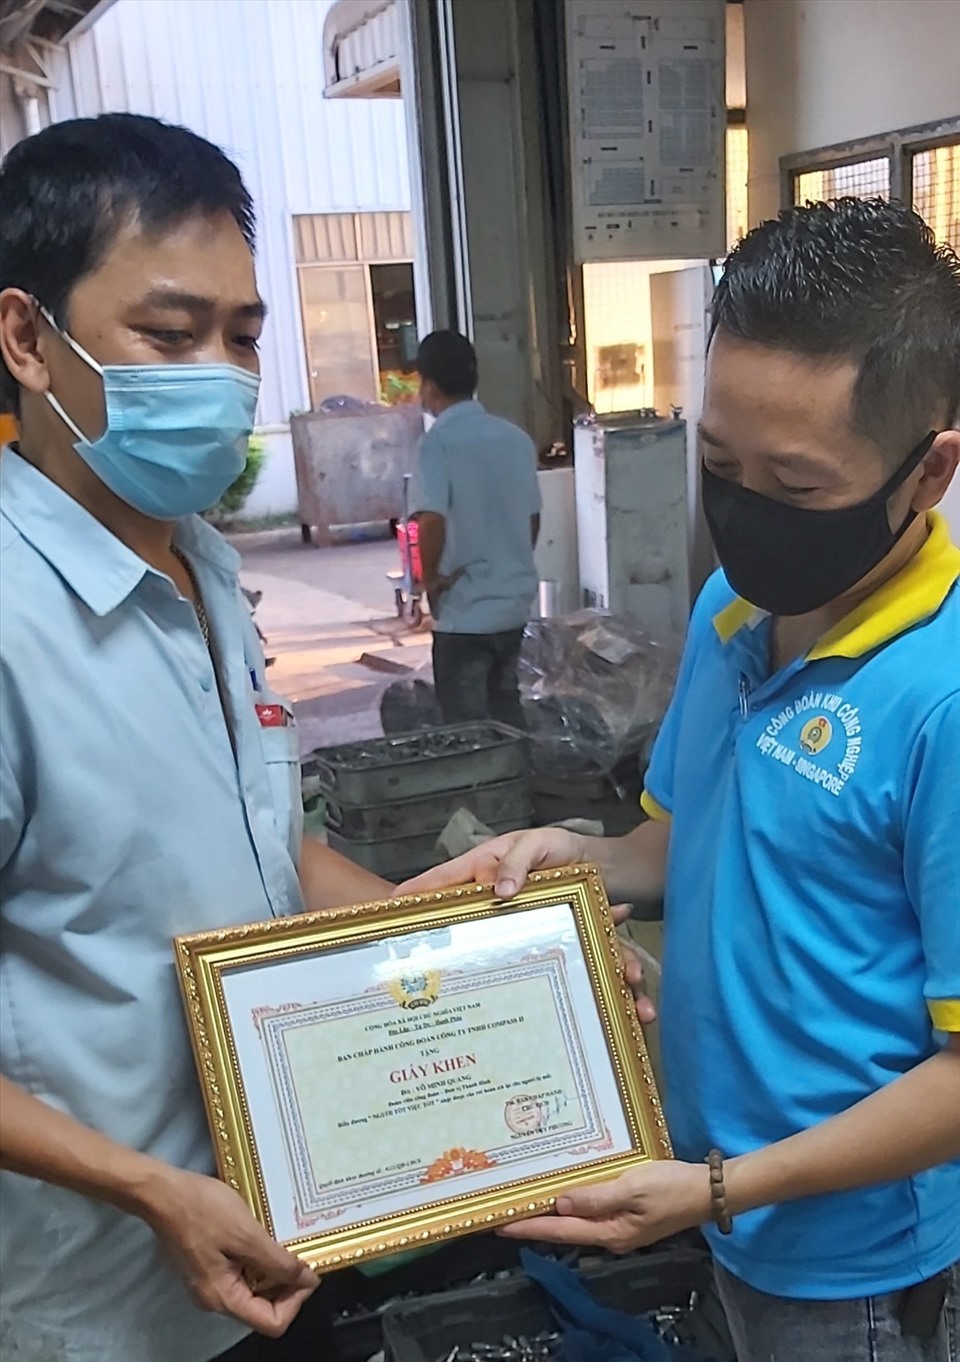 Đại diện CĐCS trao giấy khen anh Võ Minh nhặt được cái ví trong nhà vệ sinh sau đó giao lại cho CĐCS để trả lại người đánh rơi.